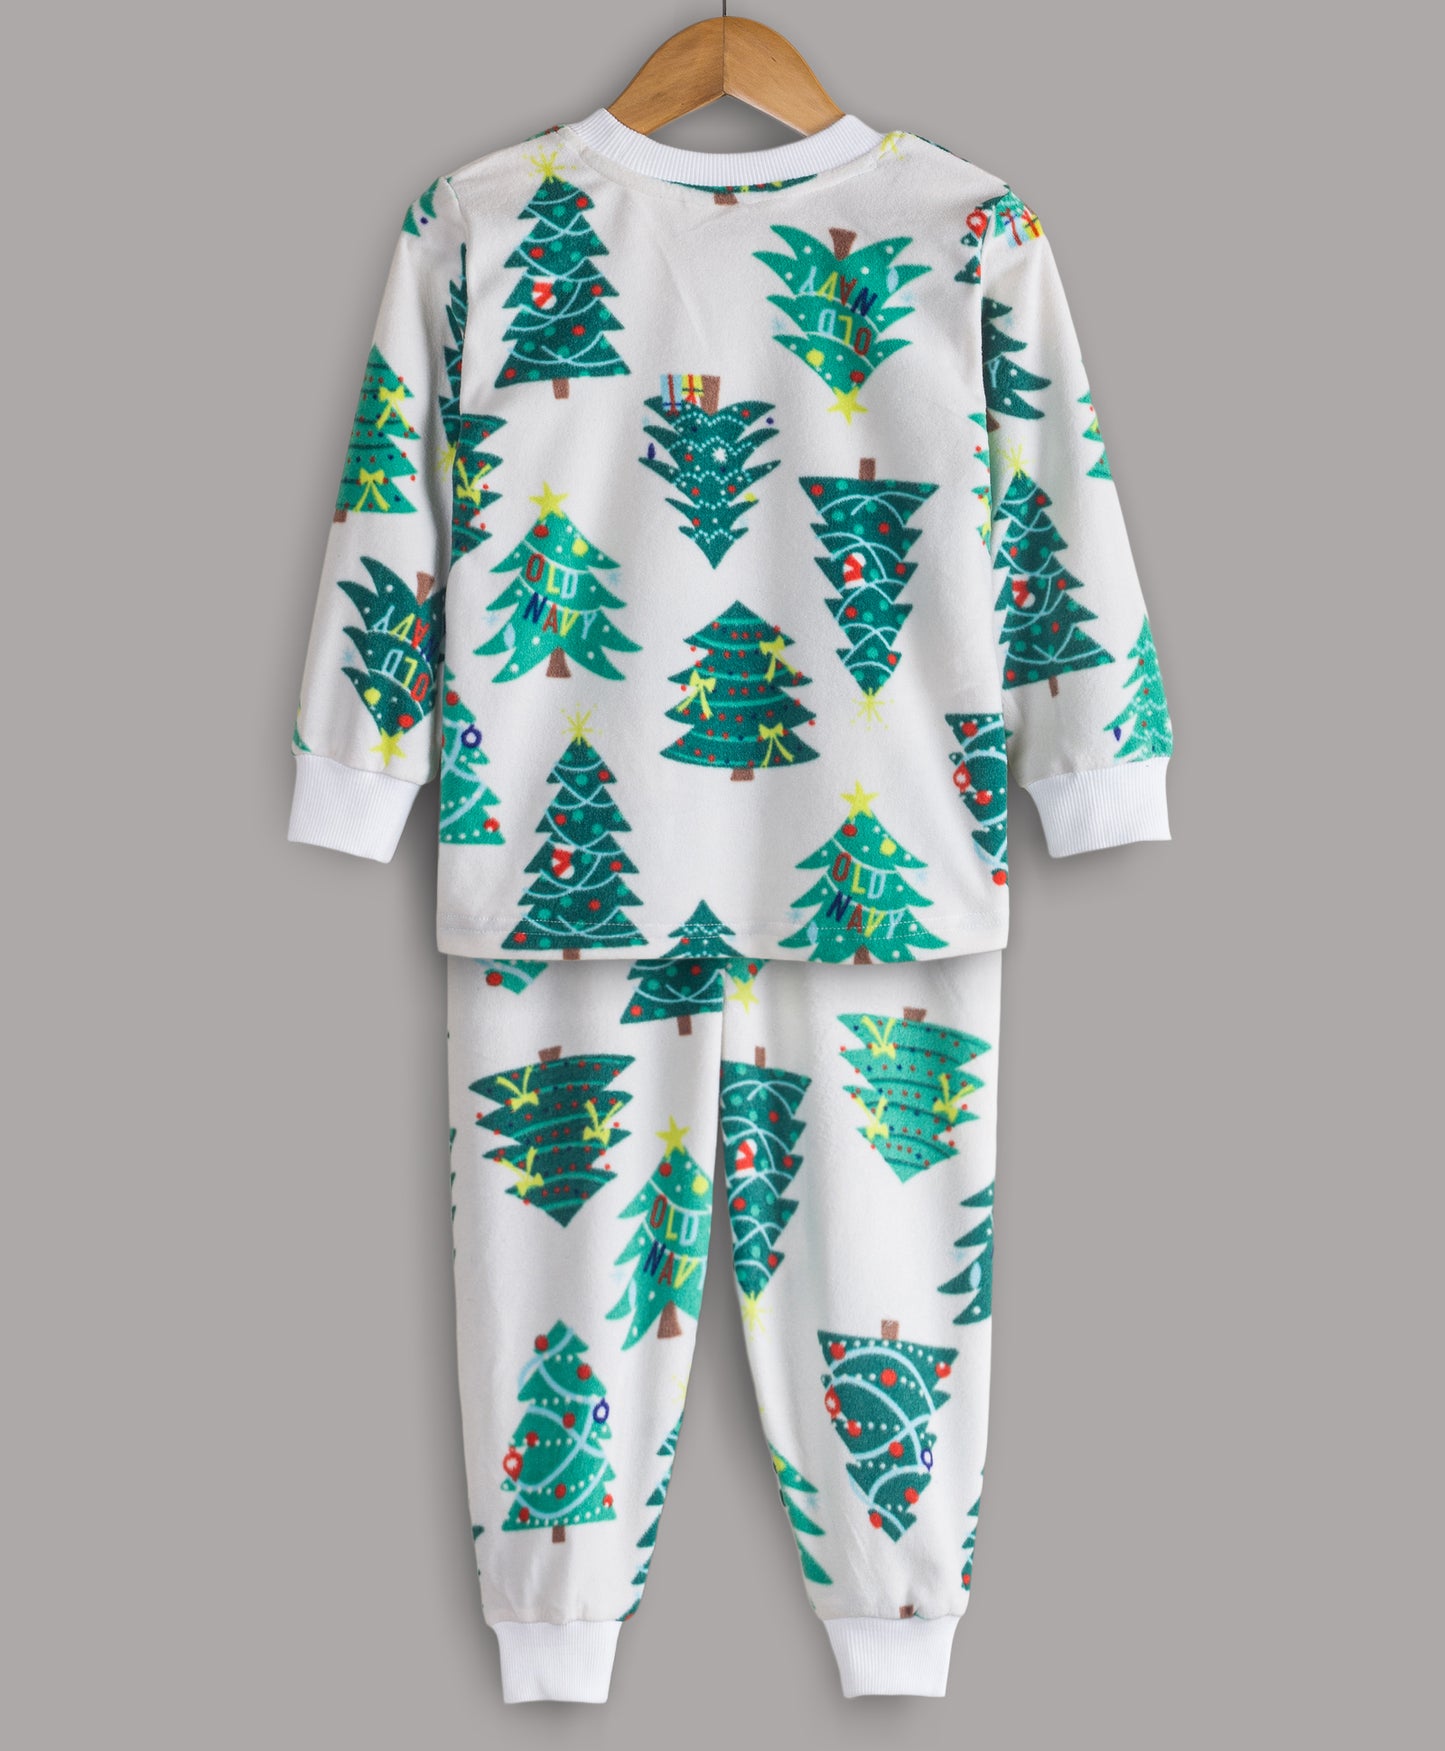 Christmas Tree print track suit. Hi